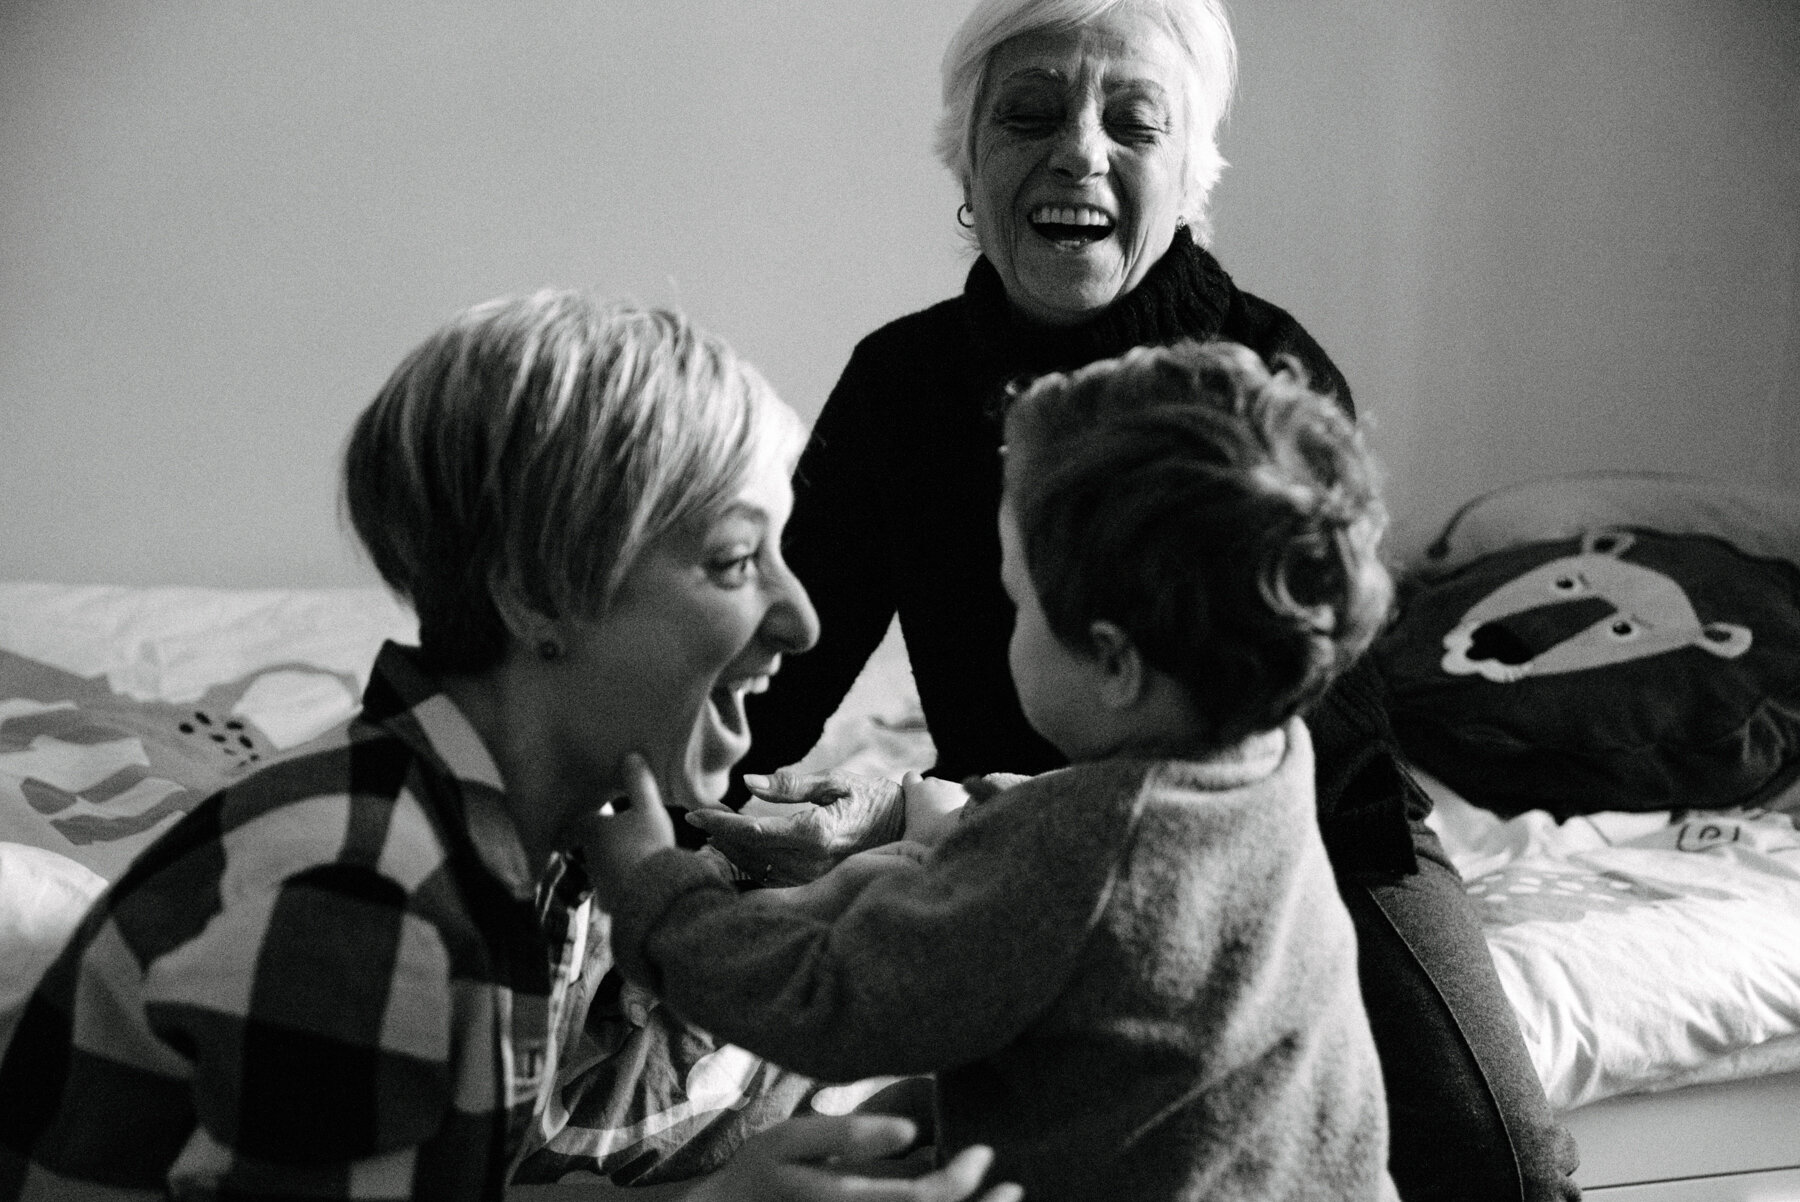 006photo-noir-et-blanc-maman-et-grand-maman-qui-rigolent-avec-un-enfant-photographe-de-famille-a-montreal-marianne-charland-0638.jpg